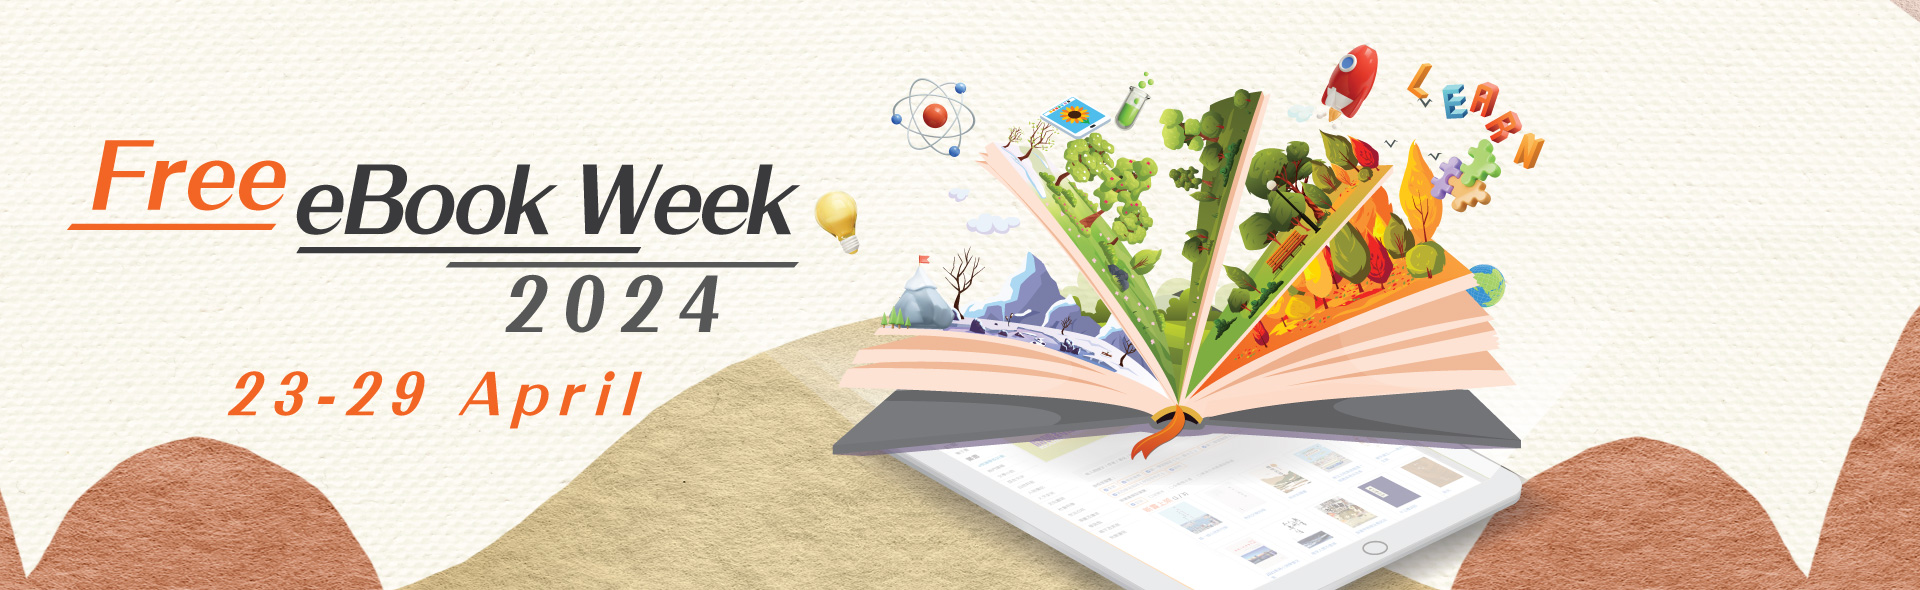 Free eBook Week